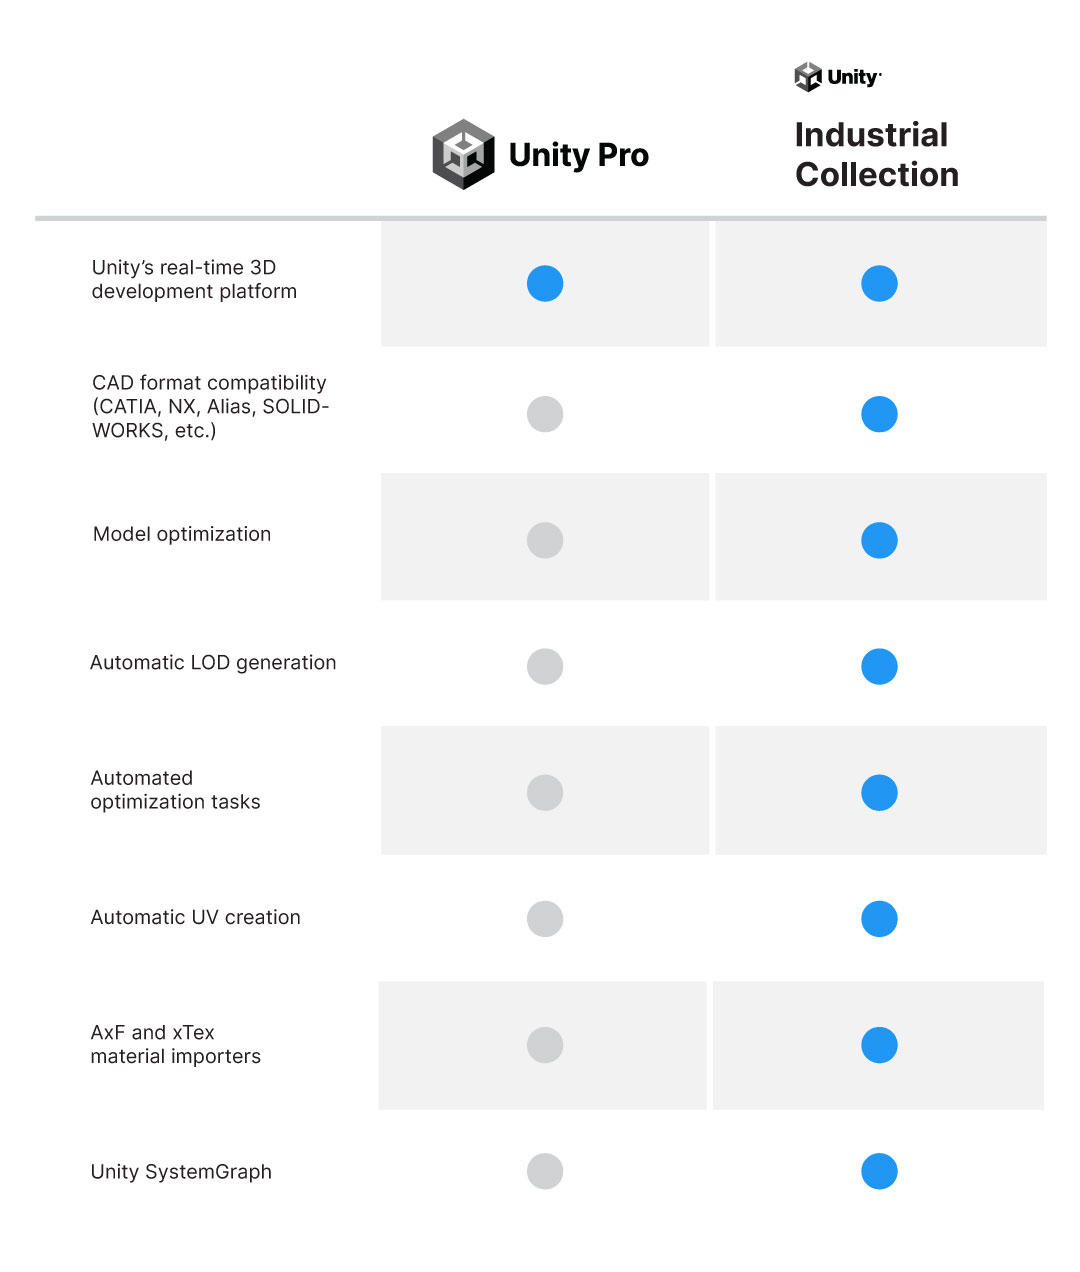 Tableau de comparaison Unity Pro par rapport à UIC